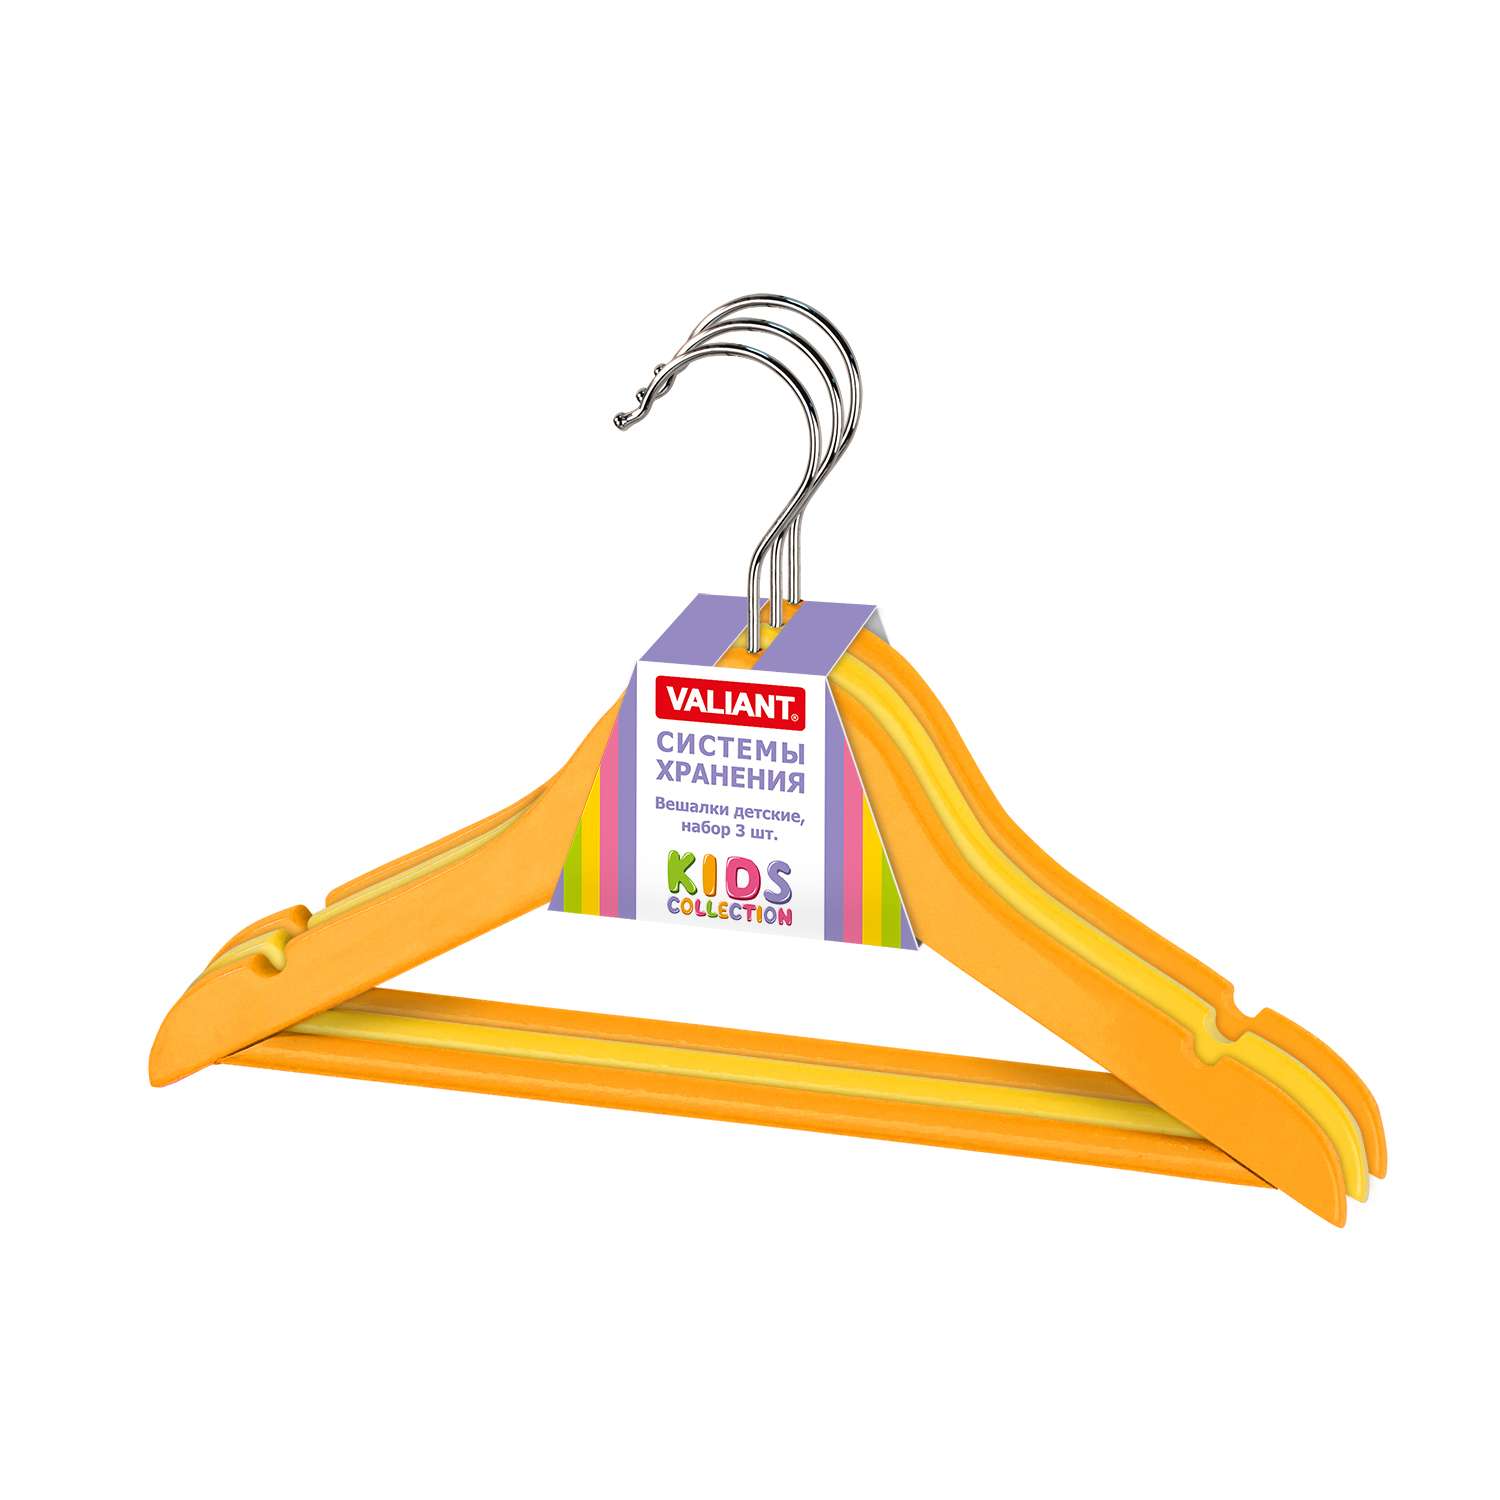 Вешалки-плечики VALIANT для детской одежды деревянные набор 3 шт 30х19х1.2 см оранжевый/жёлтый - фото 3